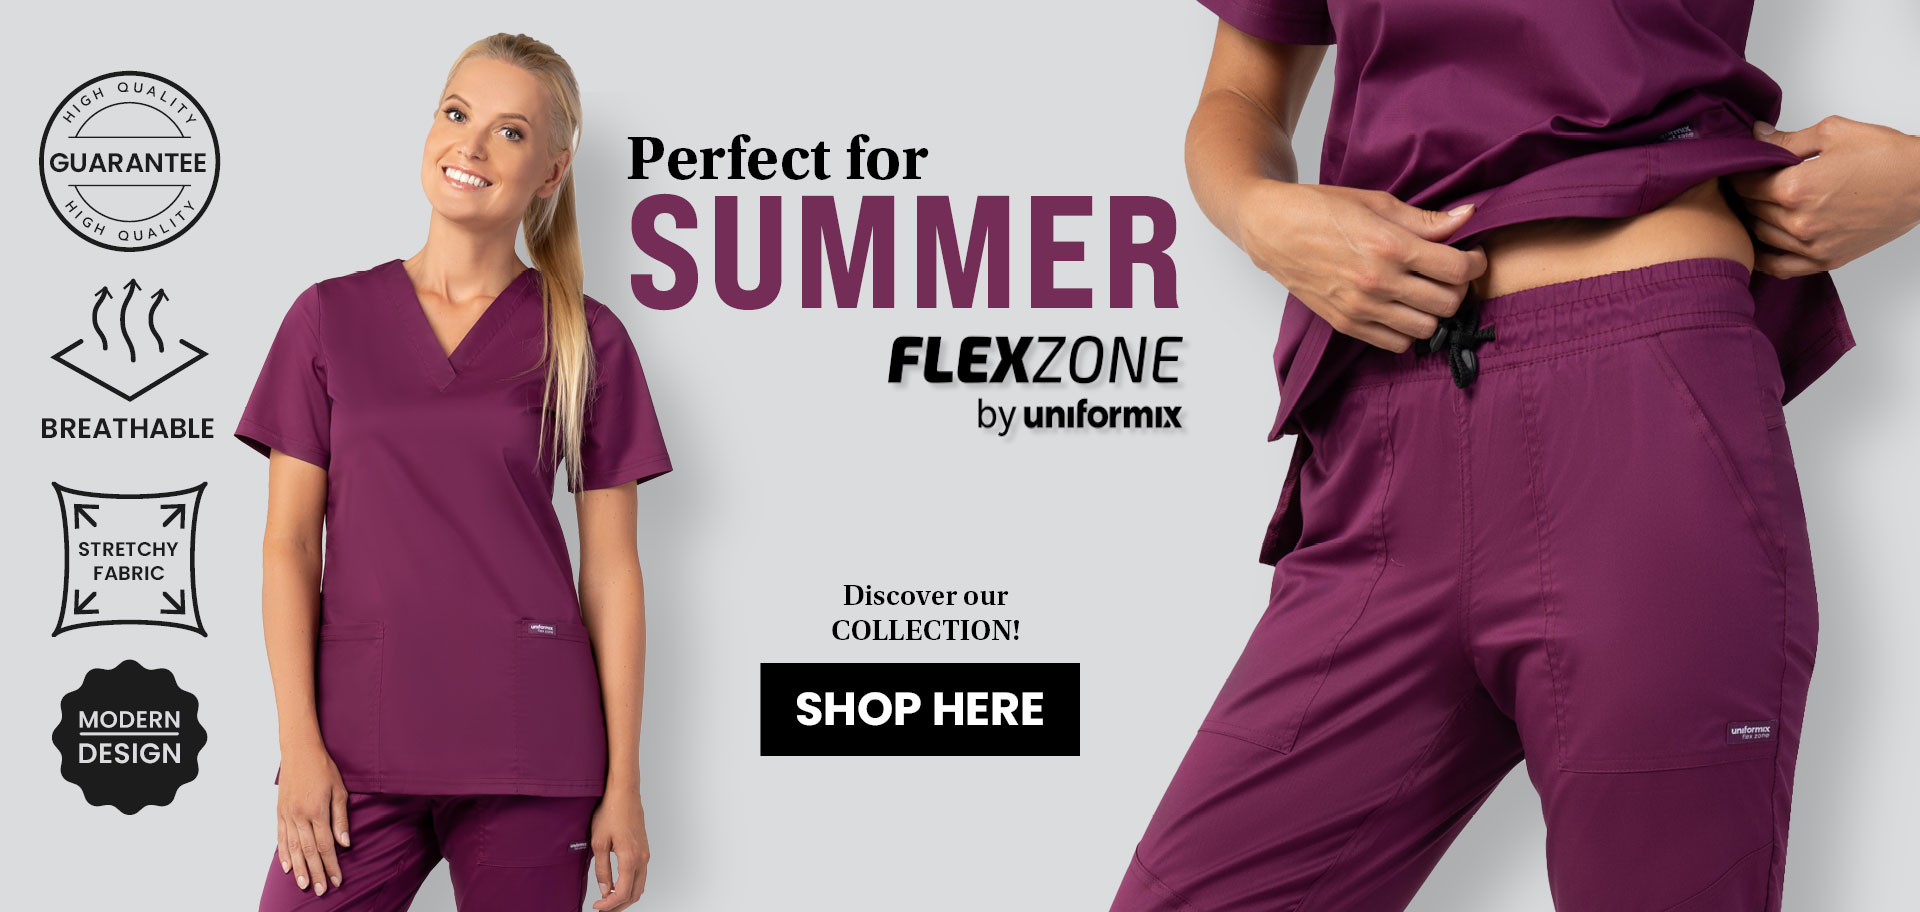 Summer-Flexzone-collection.jpg